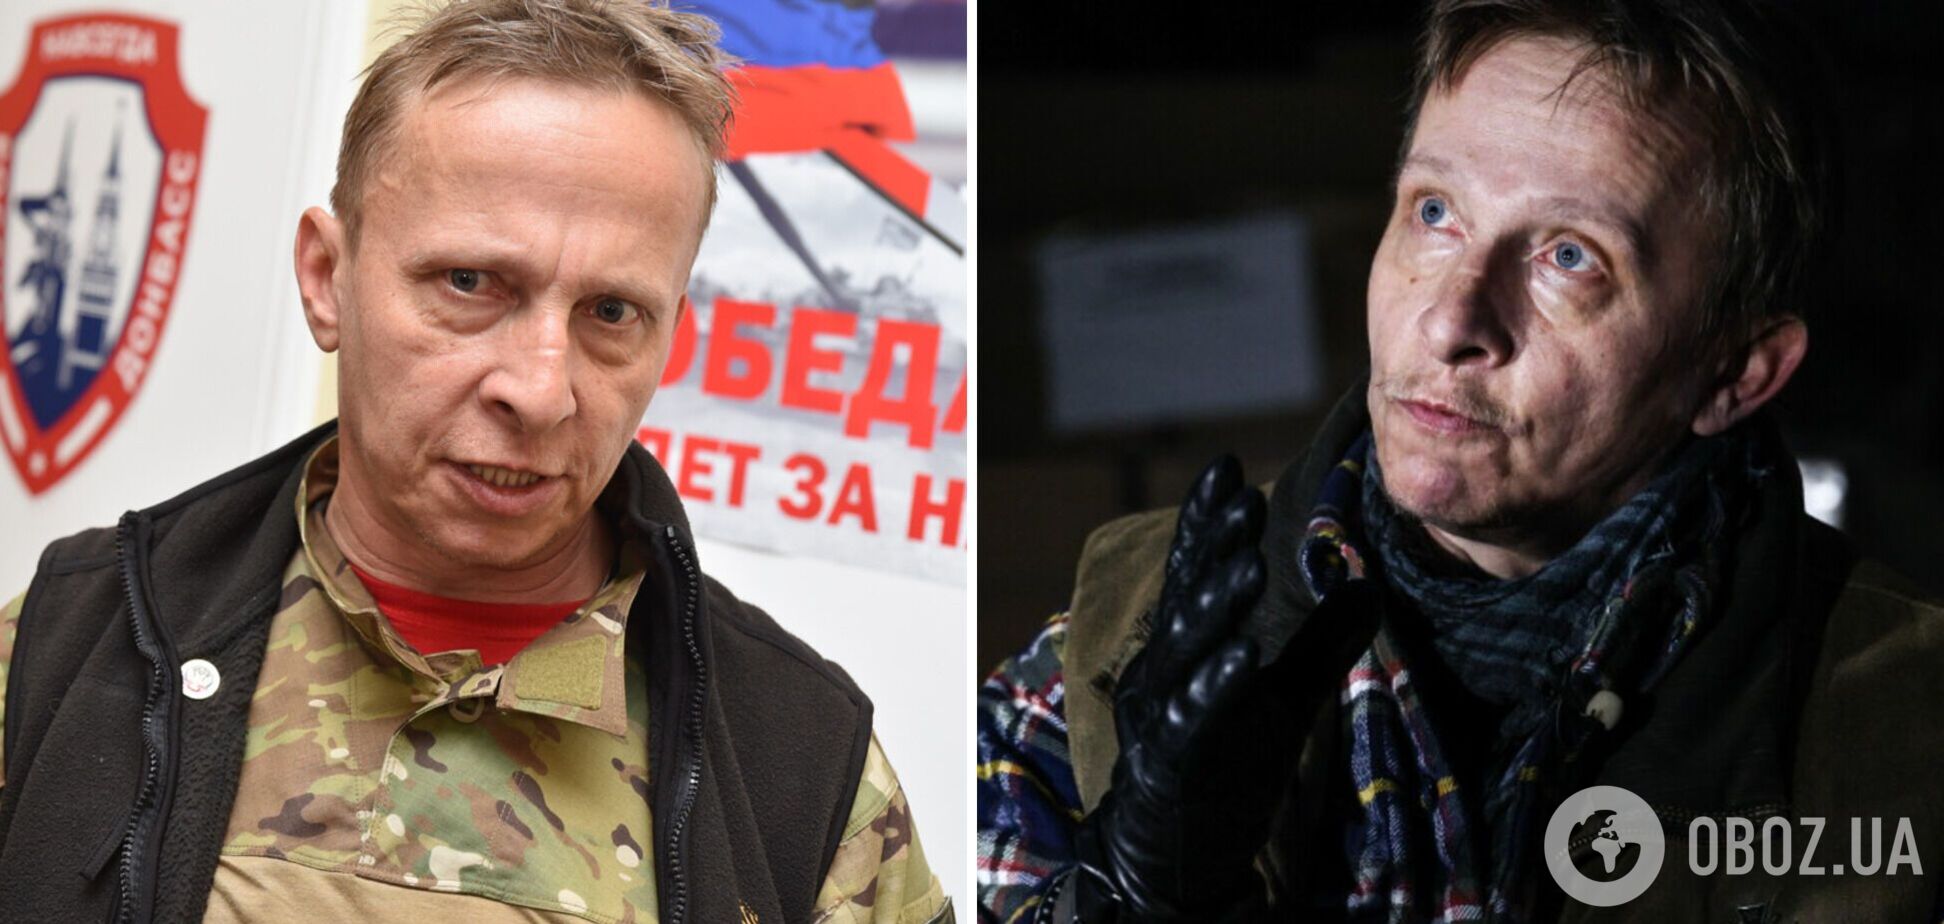 Сын российского актера Охлобыстина, воюющего на Донбассе, ушел в армию